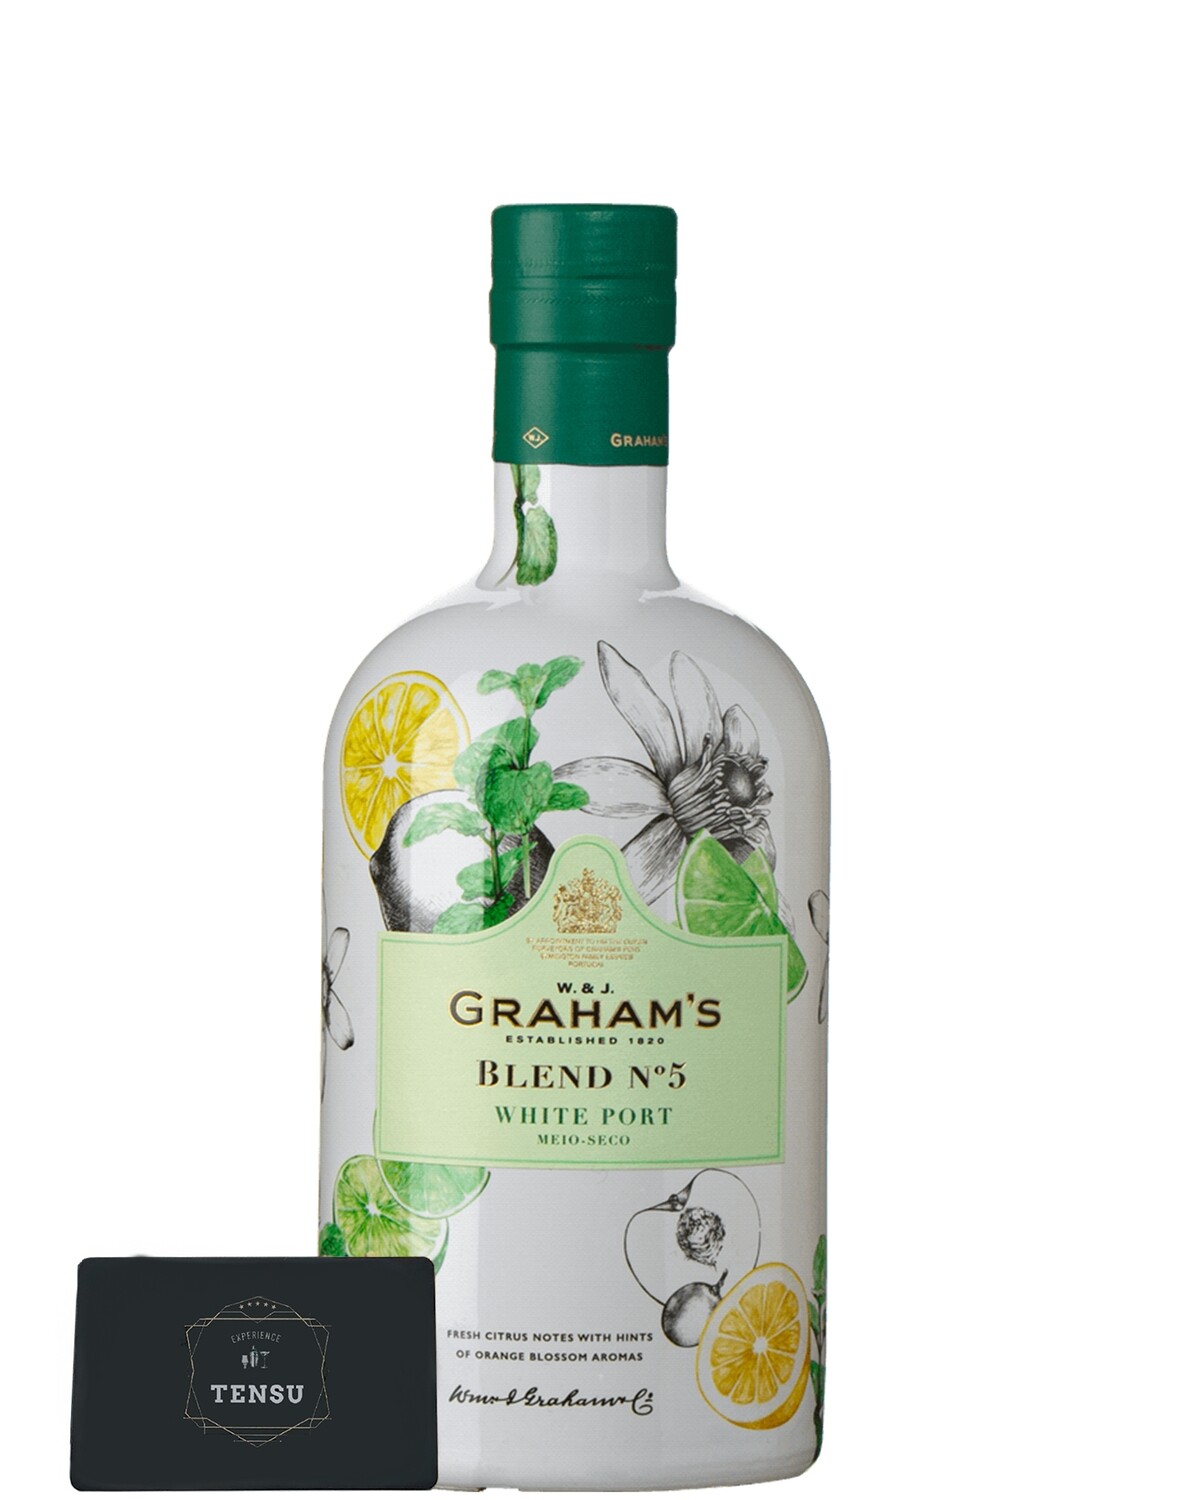 Graham's White Port - Blend N°5 - Seco 19.0% (0.75 Liter)